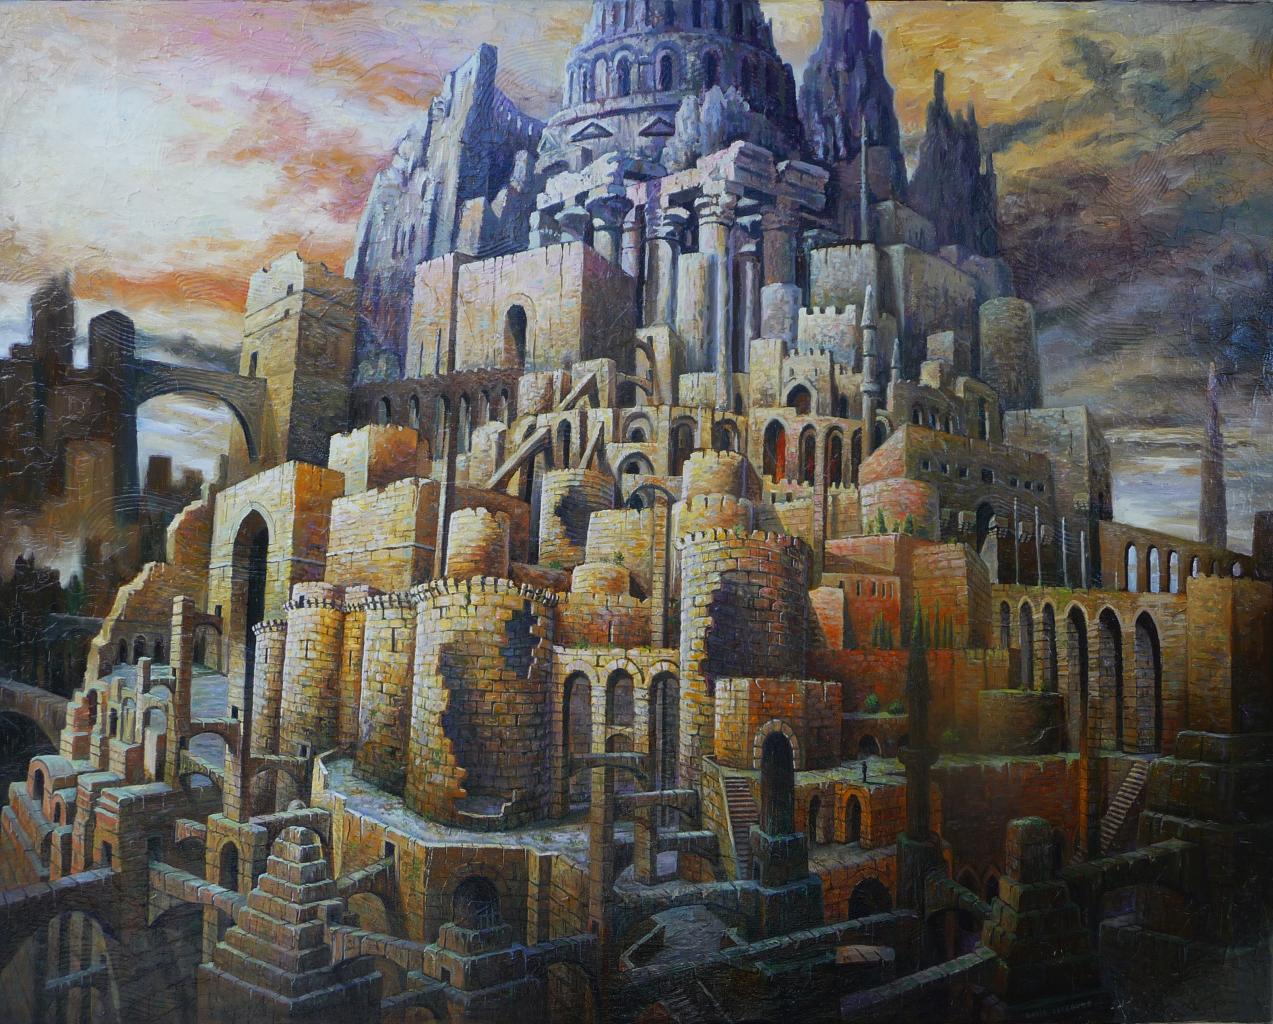 Babel en ruine, huile sur toile, 73x92cm, 2016